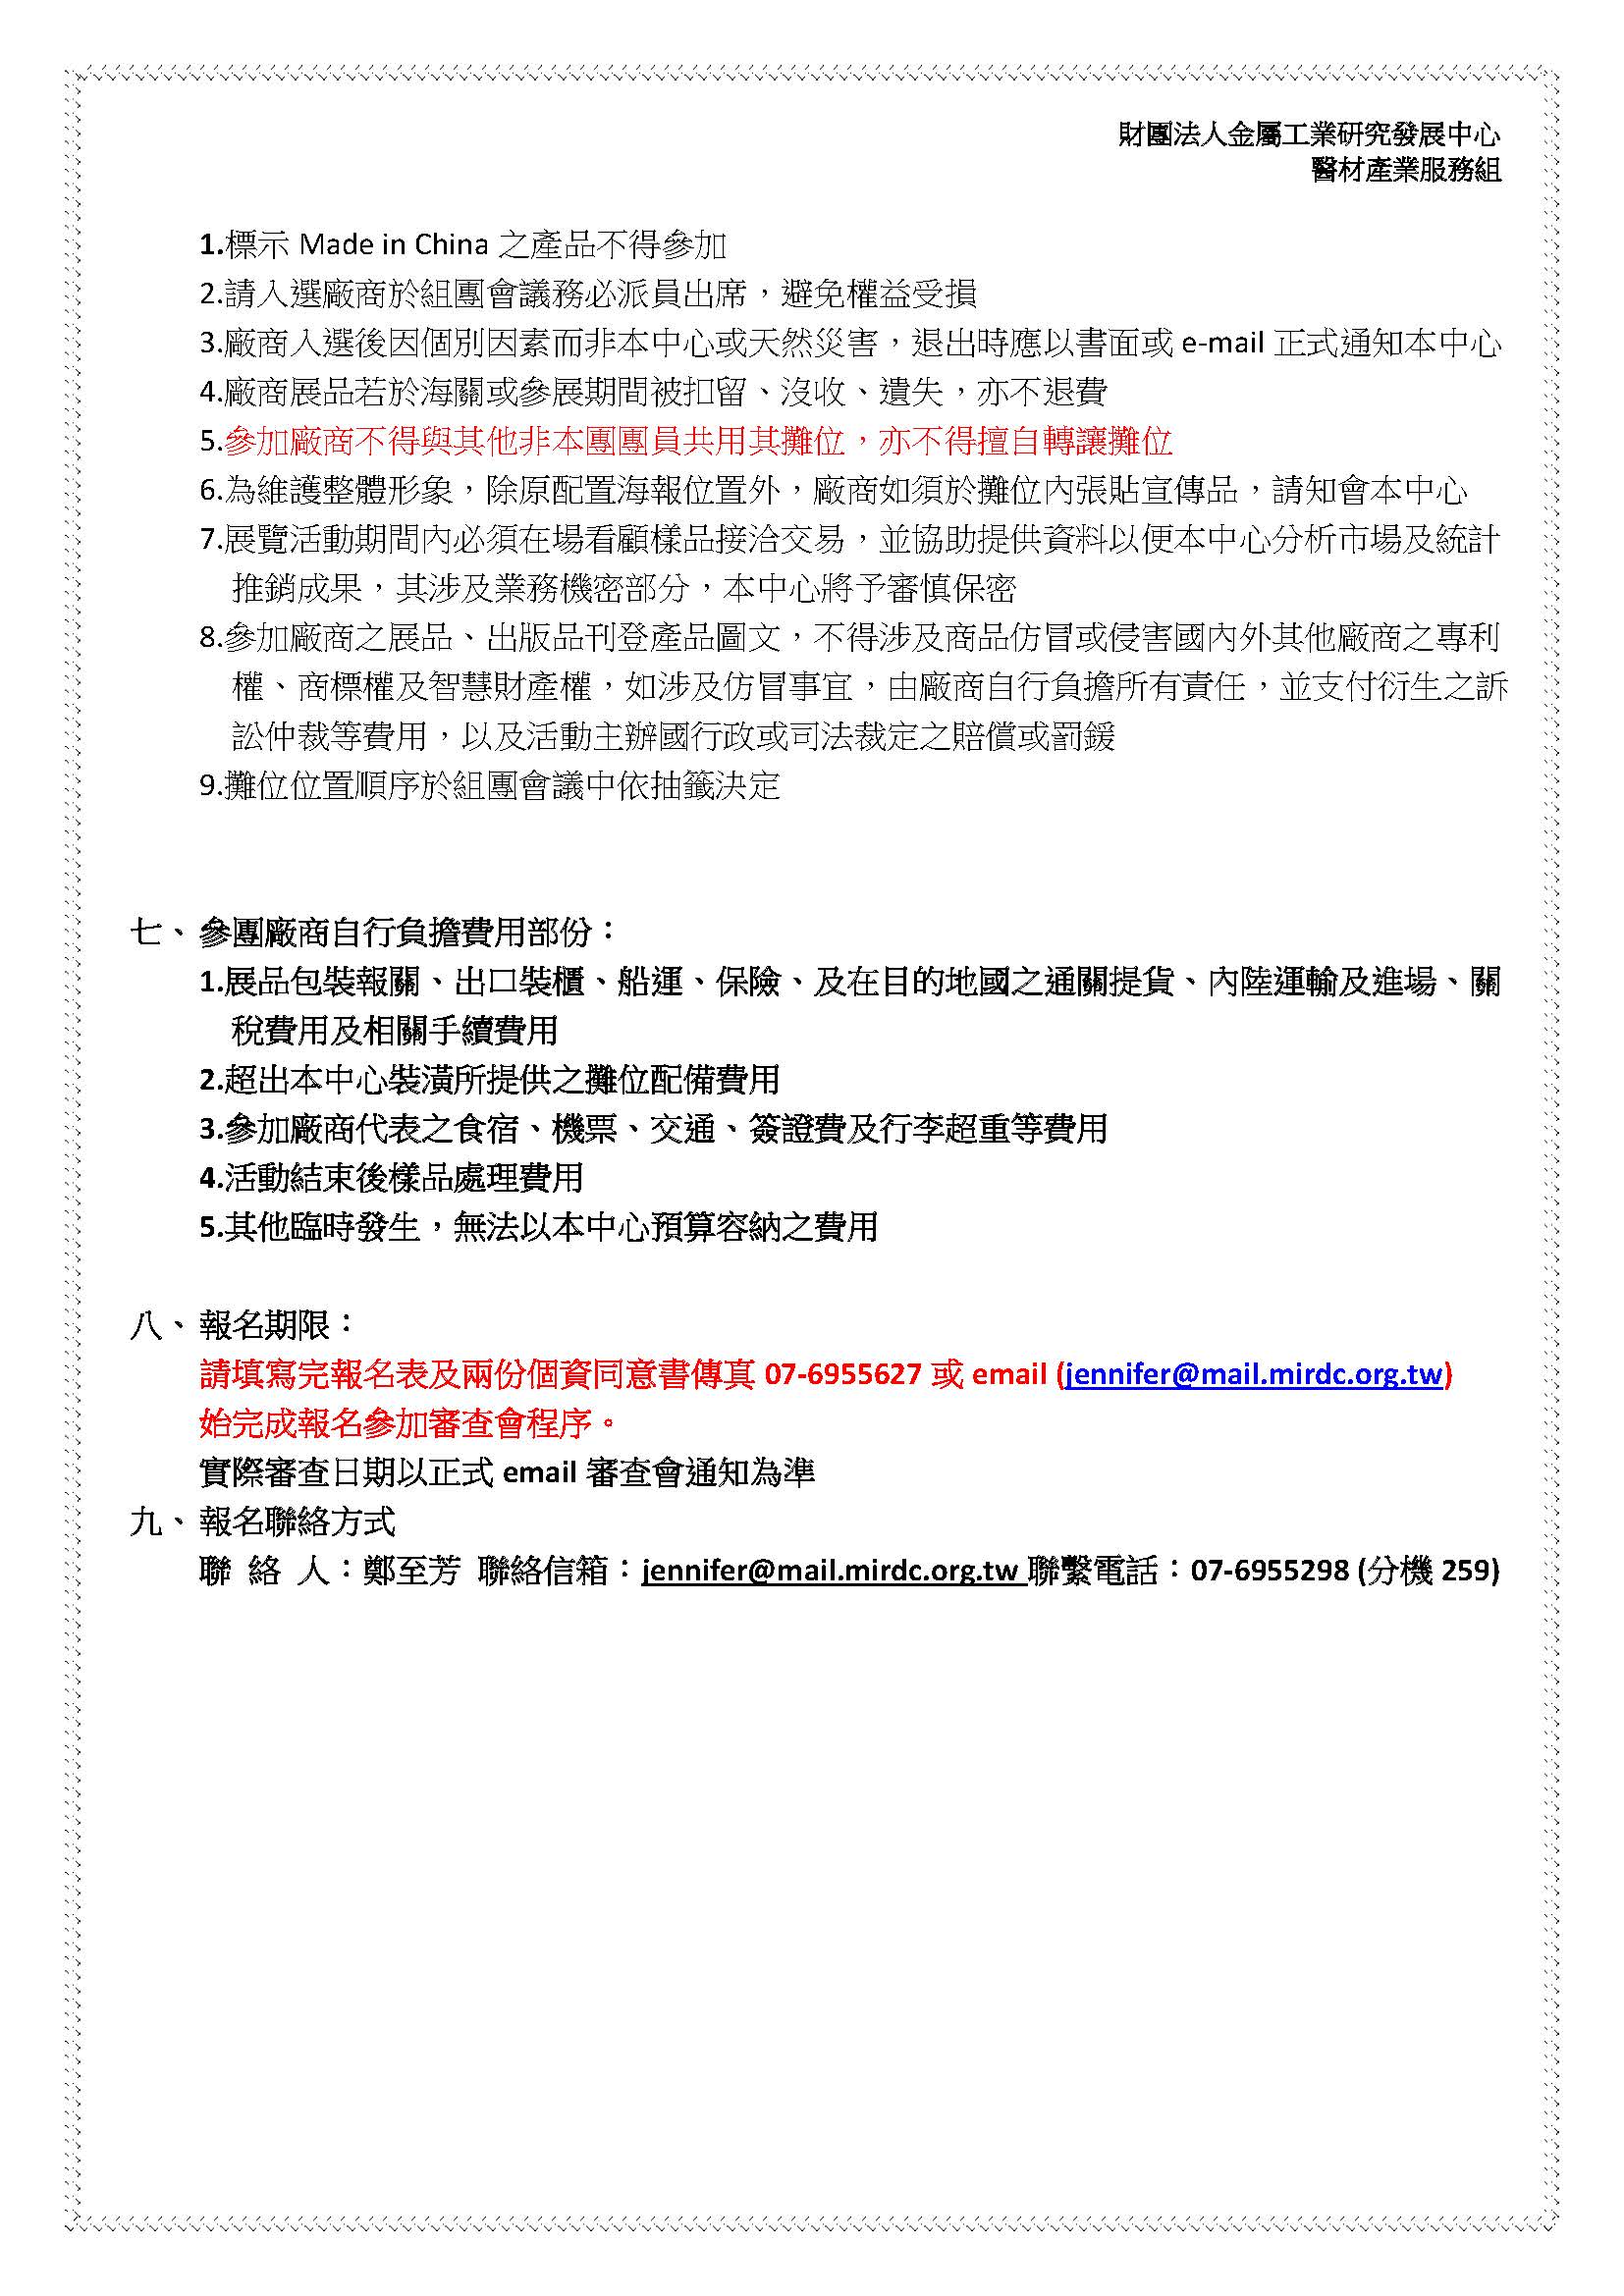 金屬中心台灣館公開徵展海報說明